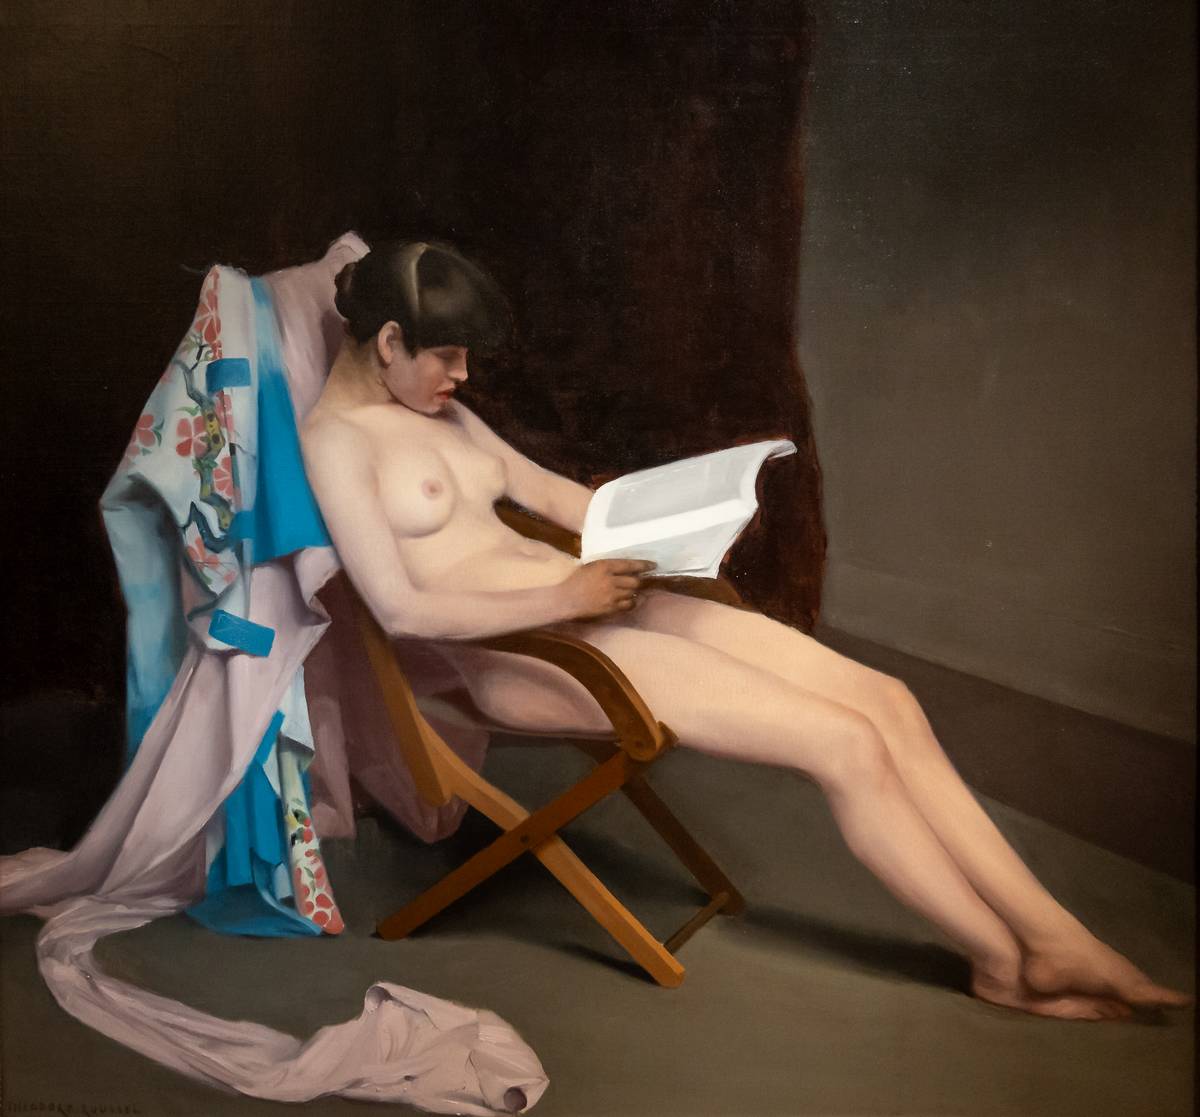 Modern in Stil und Sujet: Théodore Roussels „Lesendes Mädchen“ aus dem Jahr 1886/87 nimmt neusachliche Züge der Zwanzigerjahre vorweg (Quelle: FAZ) 2(6)